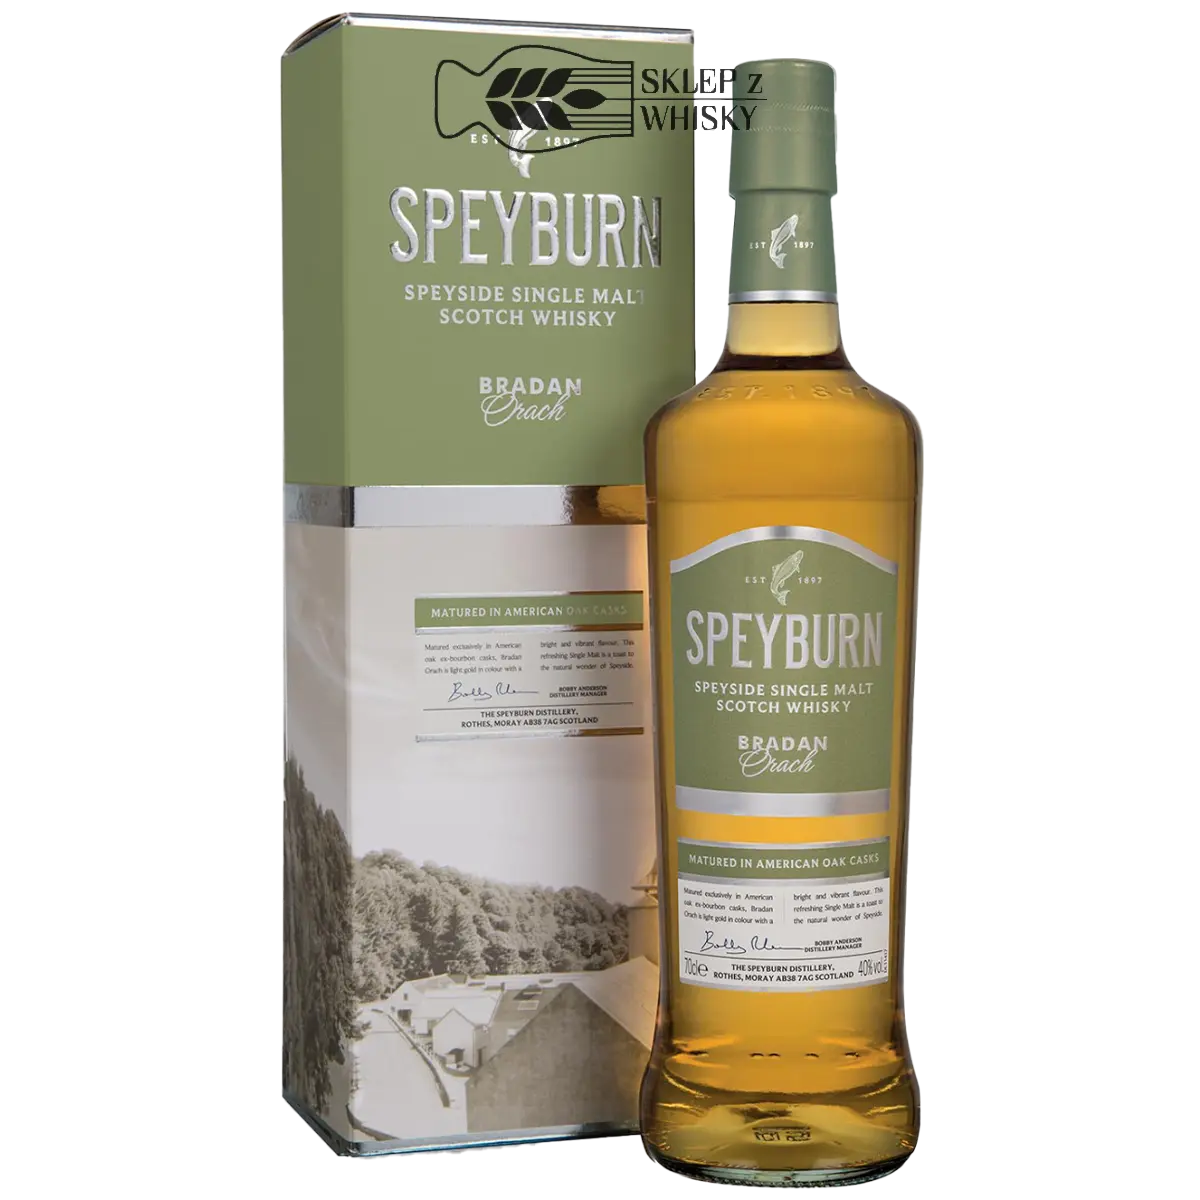 Speyburn Bradan Orach - szkocka whisky single malt z regionu Speyside, 700 ml, w pudełku